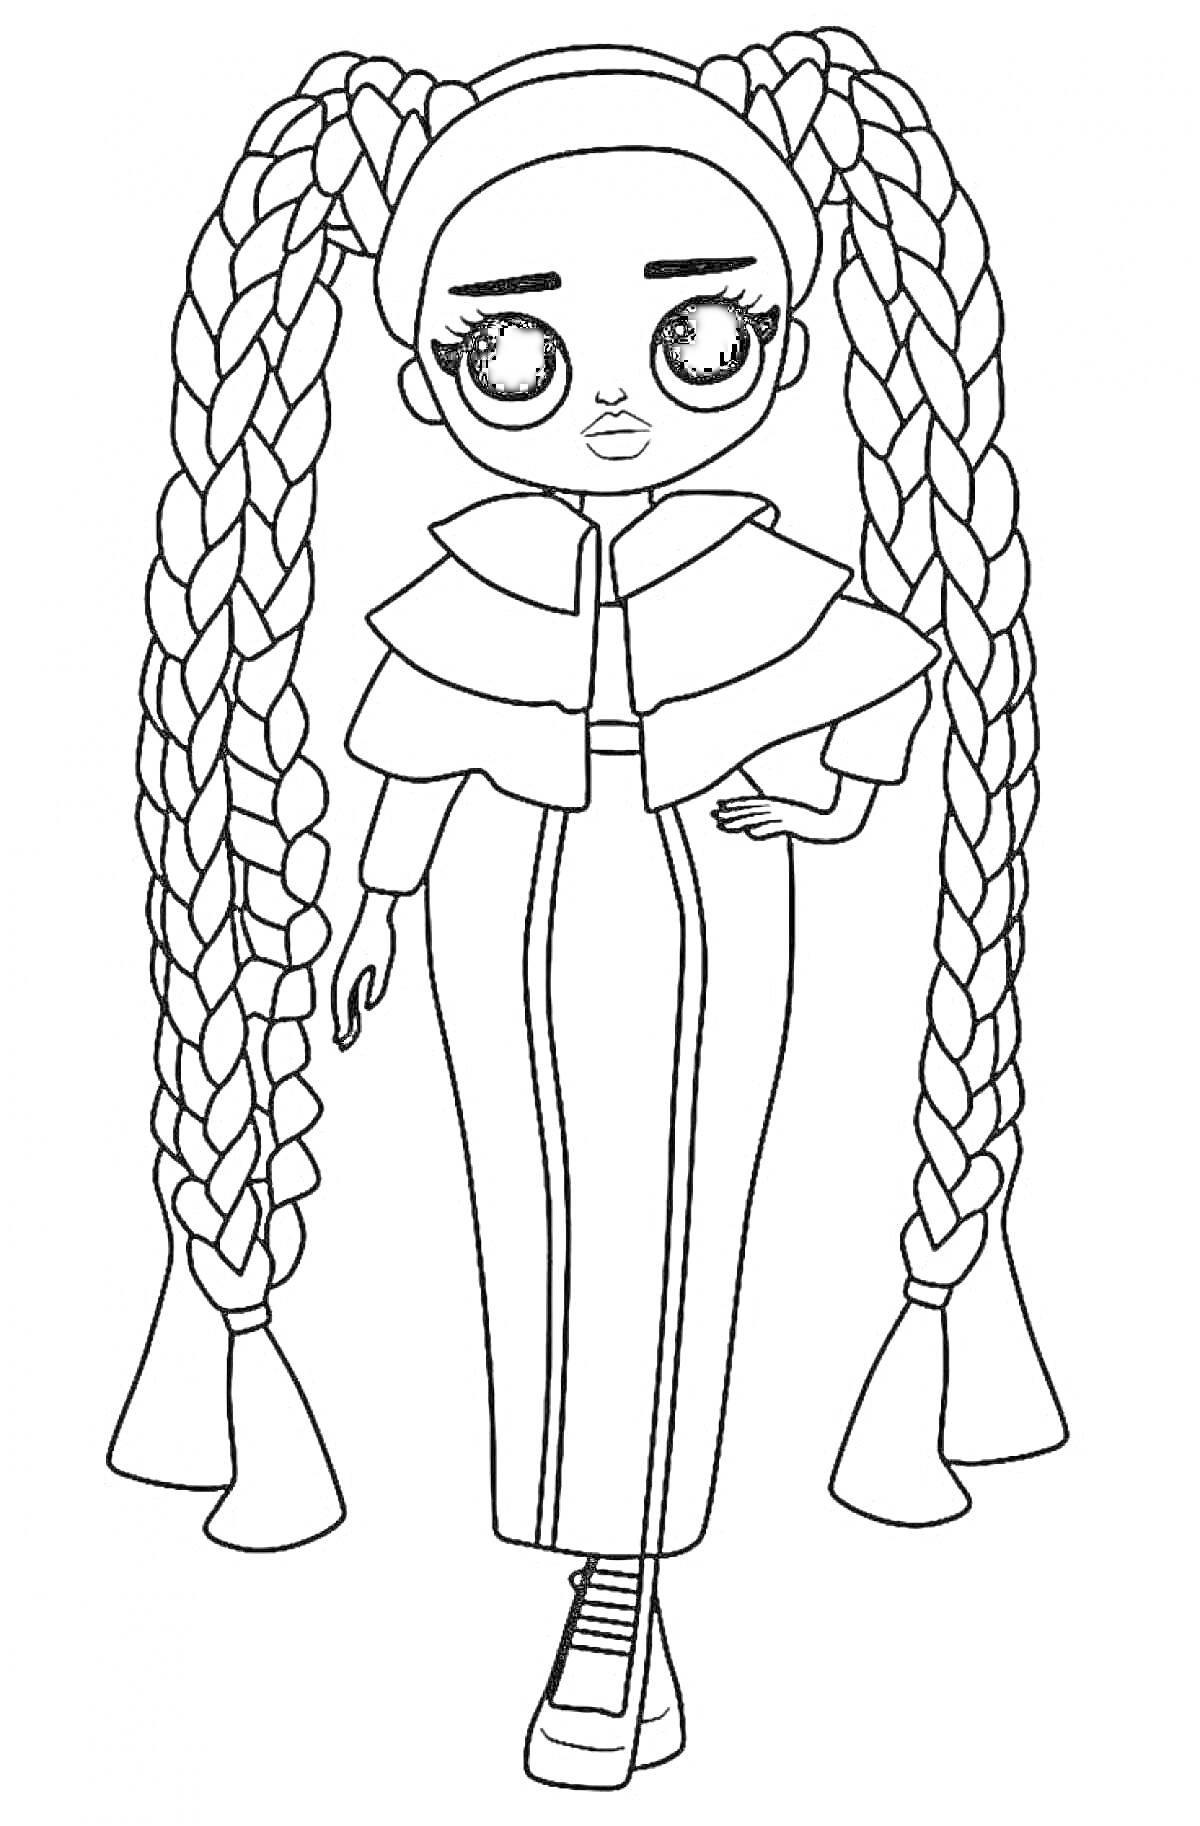 Раскраска Кукла ЛОЛ с длинными косичками и длинным пуховиком